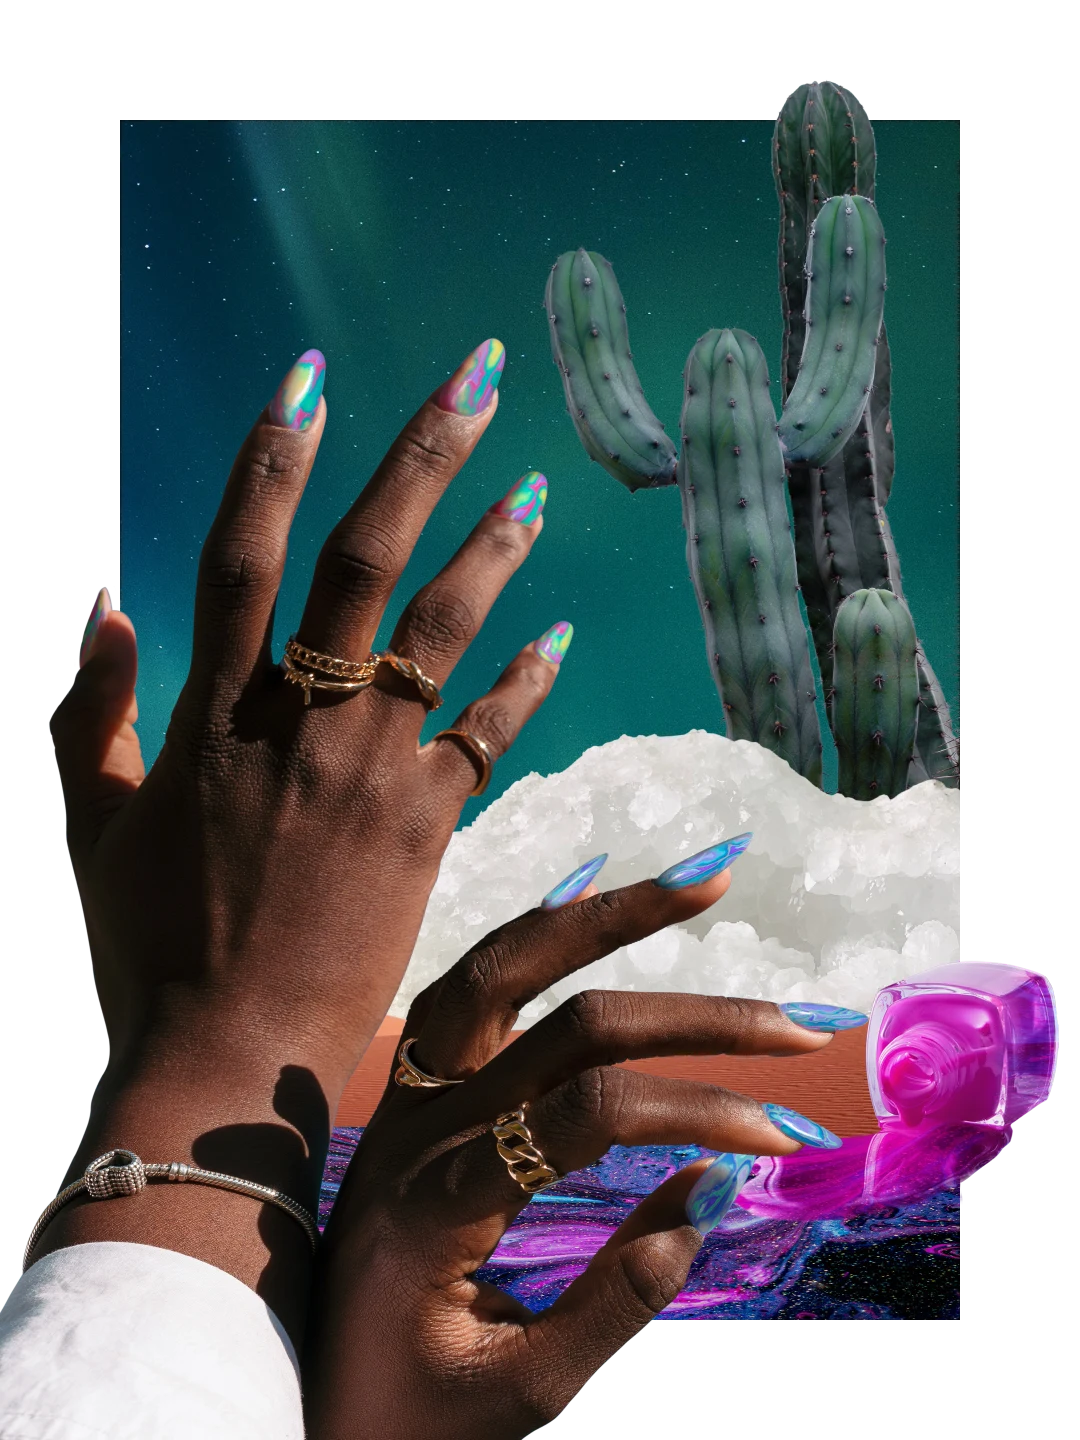 ネイルに関するアイテムのコラージュ。画像右側にブルー、ピンク、パープルのマニキュアがボトルからこぼれている様子。画像左側にカラフルなネイルをした黒人女性の手。画像右上に大きなサボテン、その下に塩の結晶。
